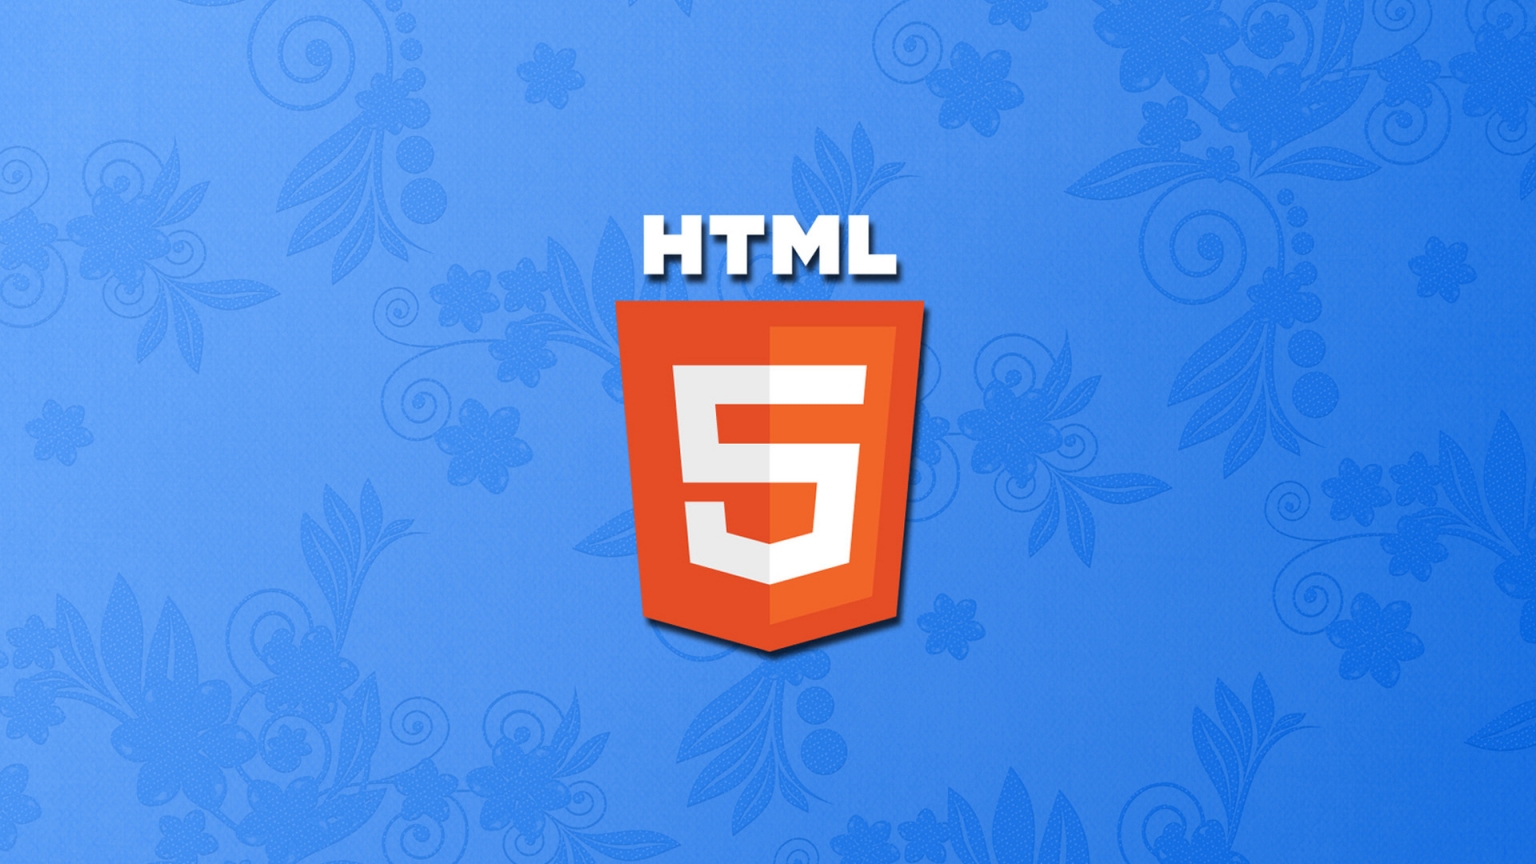 HTML 5 for 1536 x 864 HDTV resolution